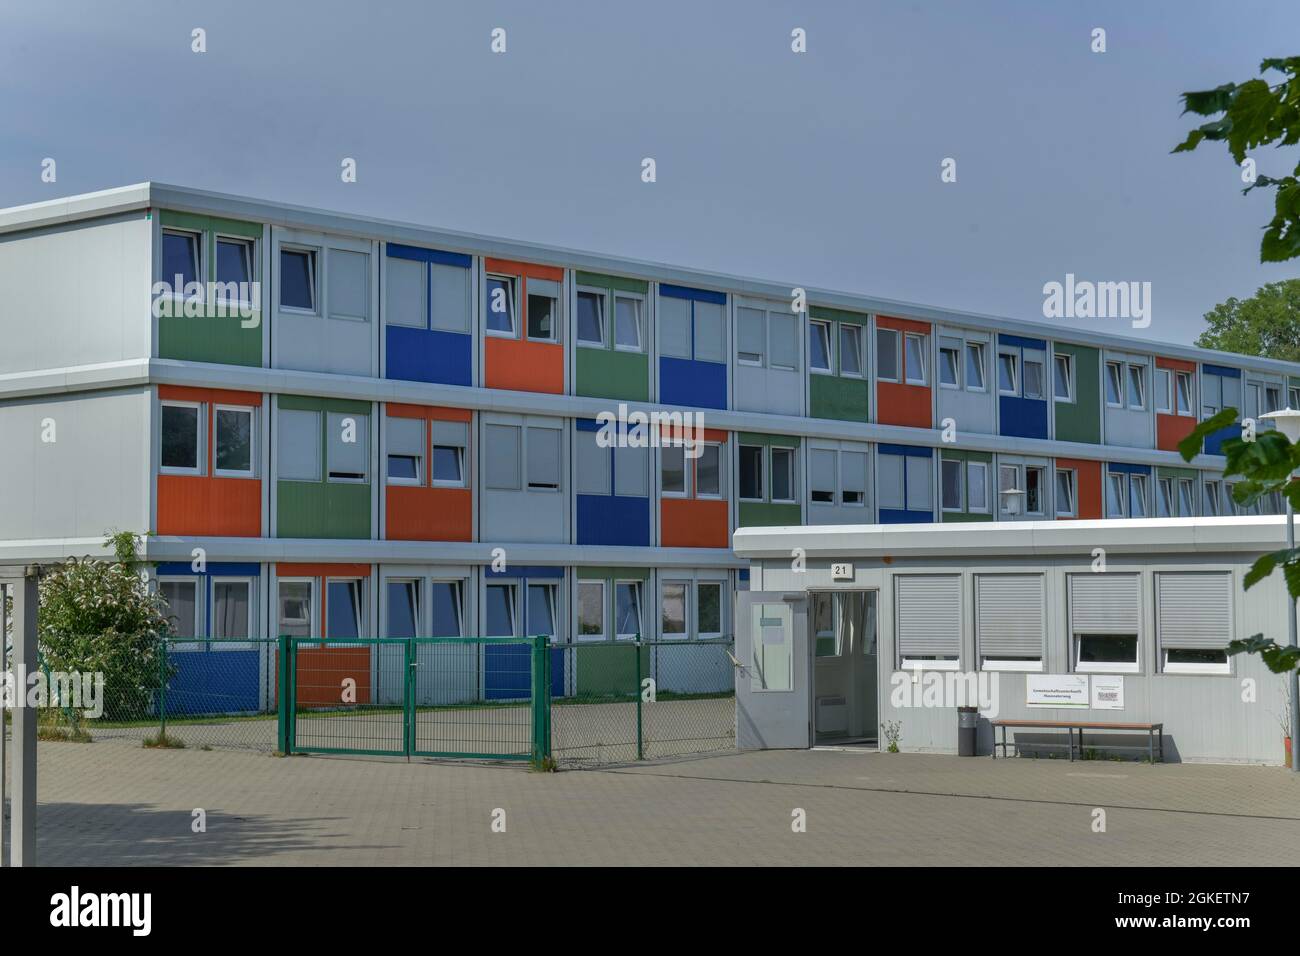 Residential home for refugees, Hausvaterweg, Falkenberg, Lichtenberg, Berlin, Germany Stock Photo